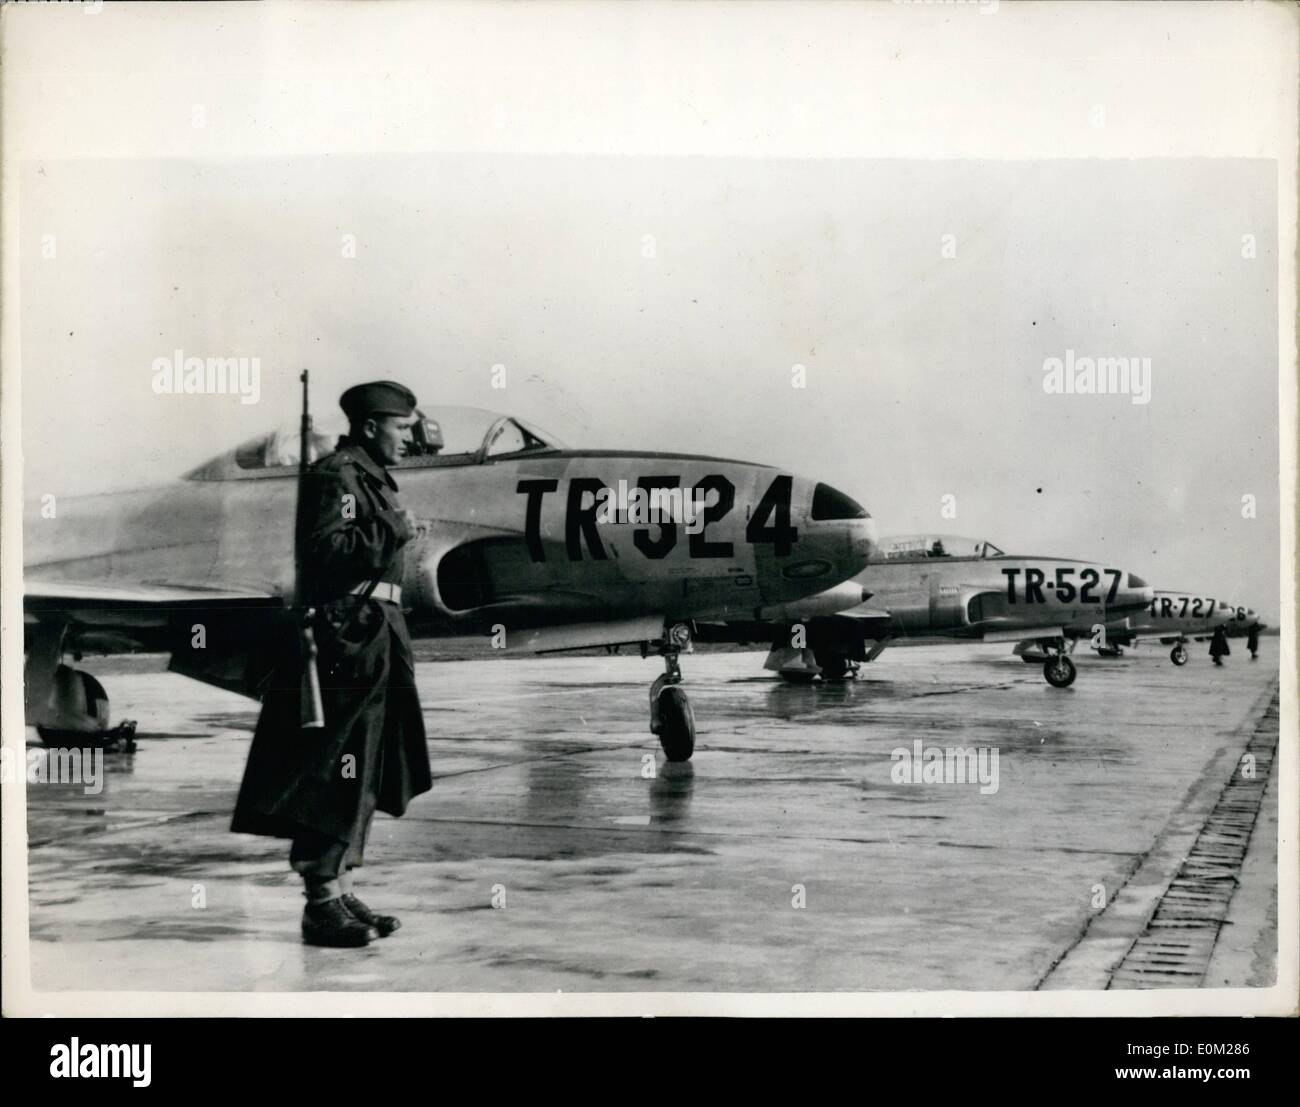 Mar 03, 1953 - Jet per Tito's Air Force: sotto le guardie armate sono questi quattro jet fighter piani che è arrivato in Jugoslavia questa settimana sotto il militare americano in programma di aiuto. Essi sono i primi jet della Iugoslavia Air Force. Foto Stock